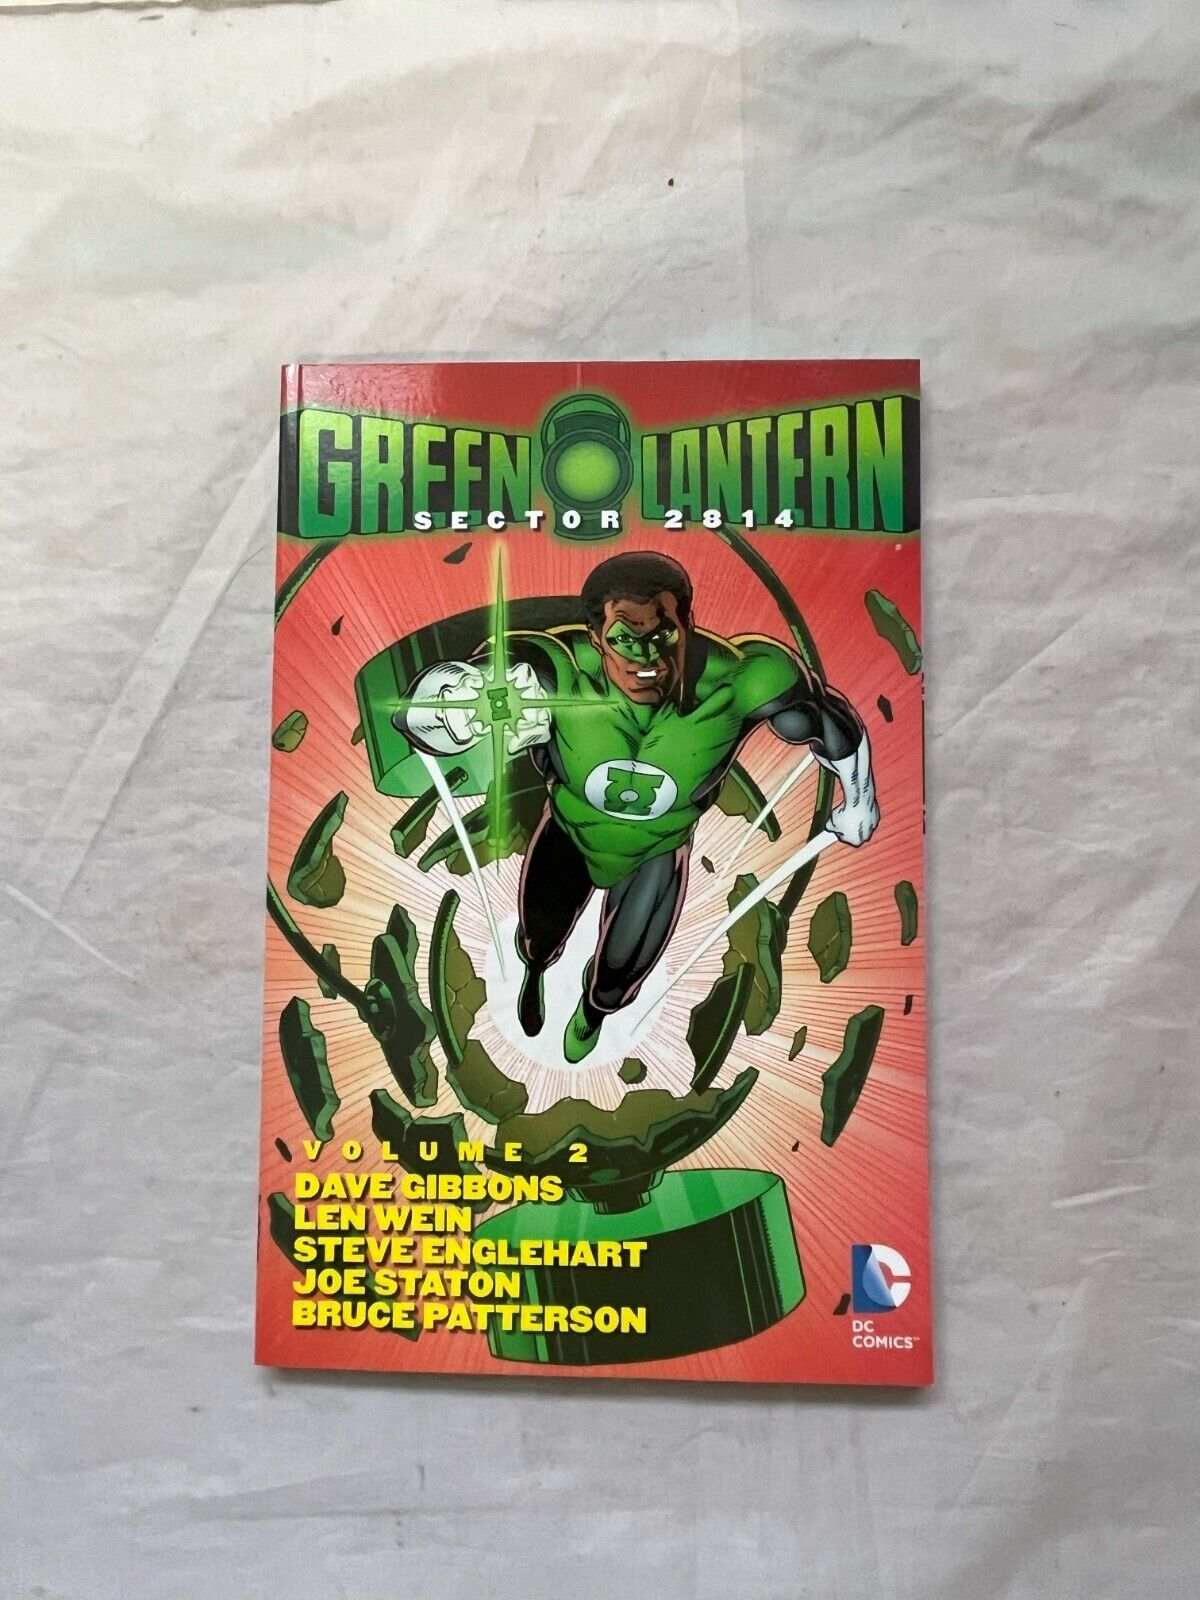 Green Lantern: Sector 2814 Volume 2 by Len Wein